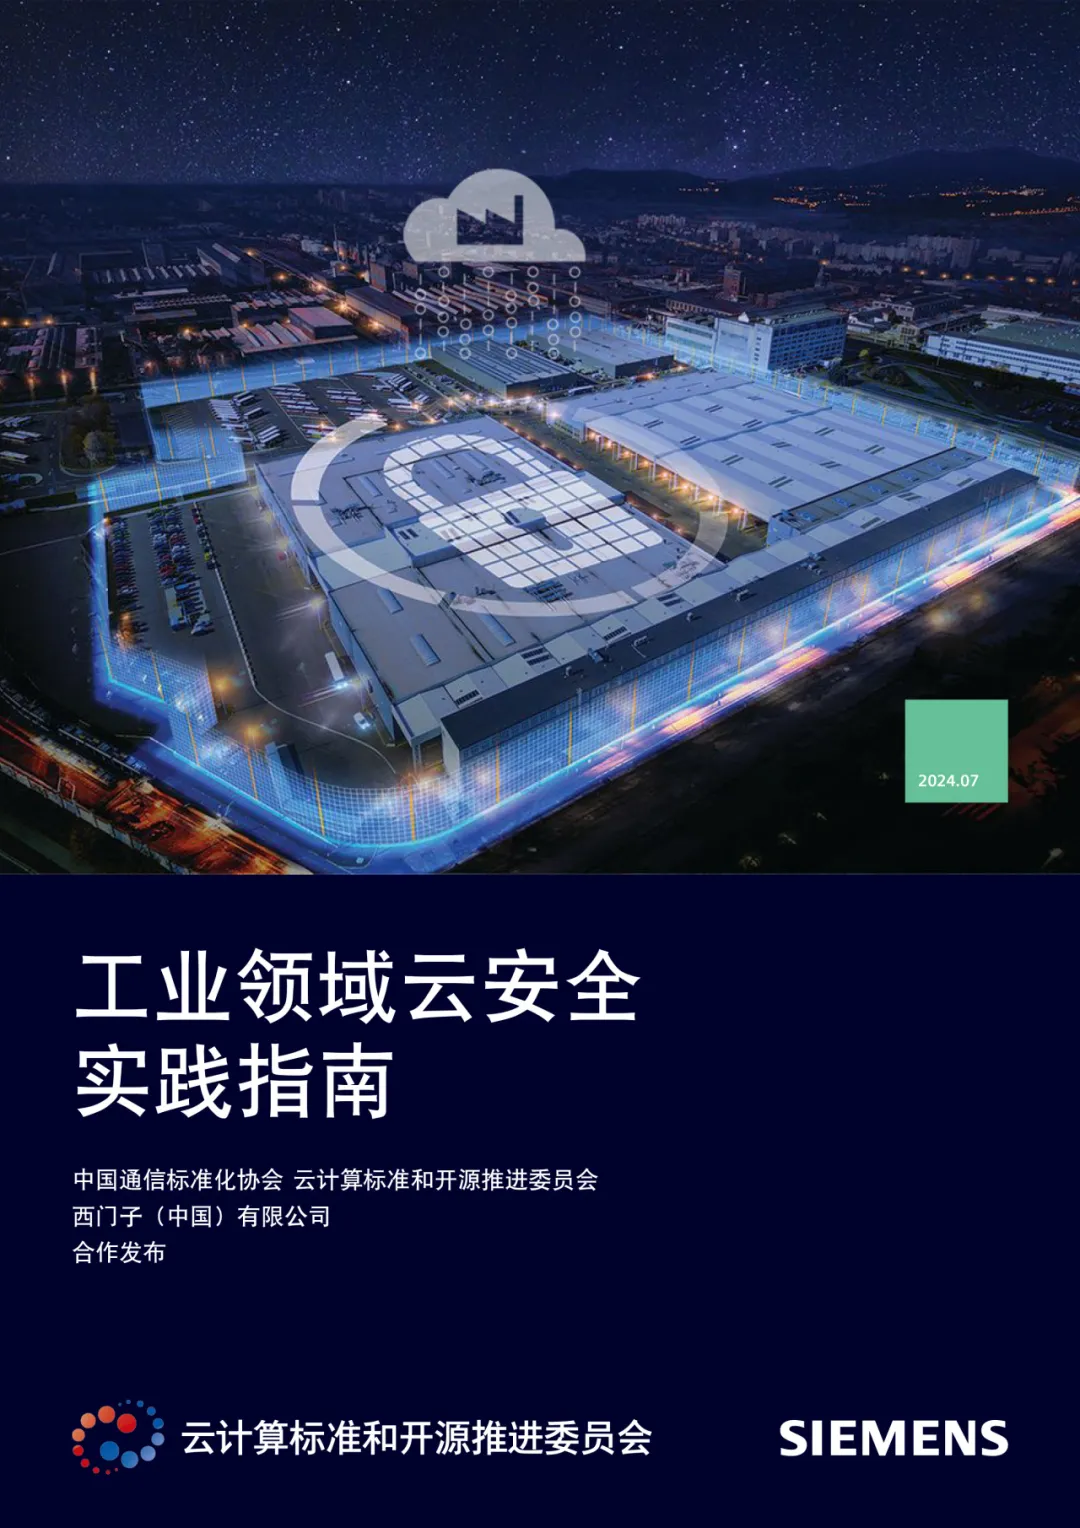 西门子联合中国通信标准化协会发布《工业领域云安全实践指南》